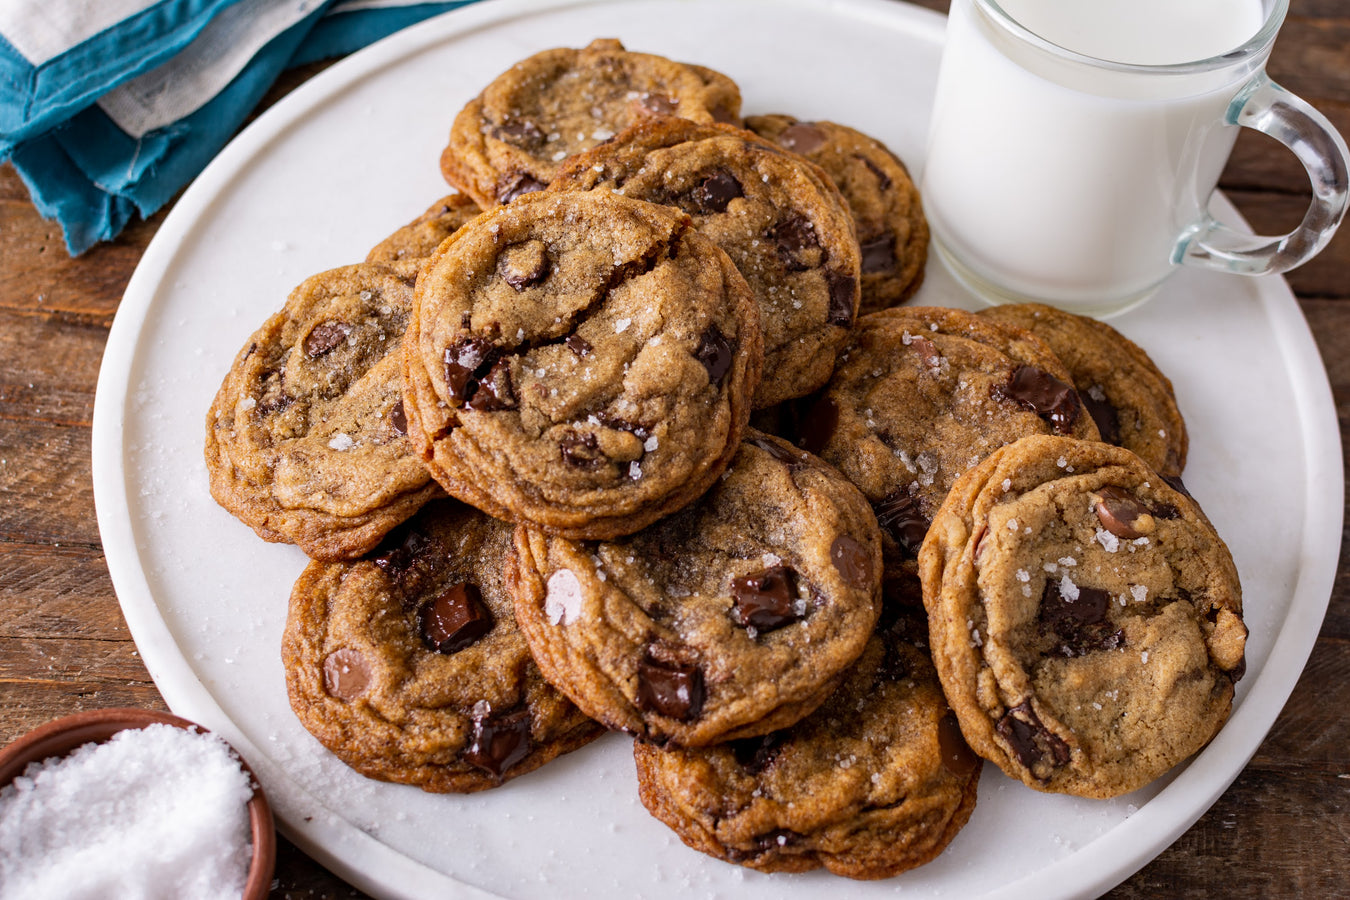 Test Kitchen Essentials: Brown Butter Chocolate Chip Cookies